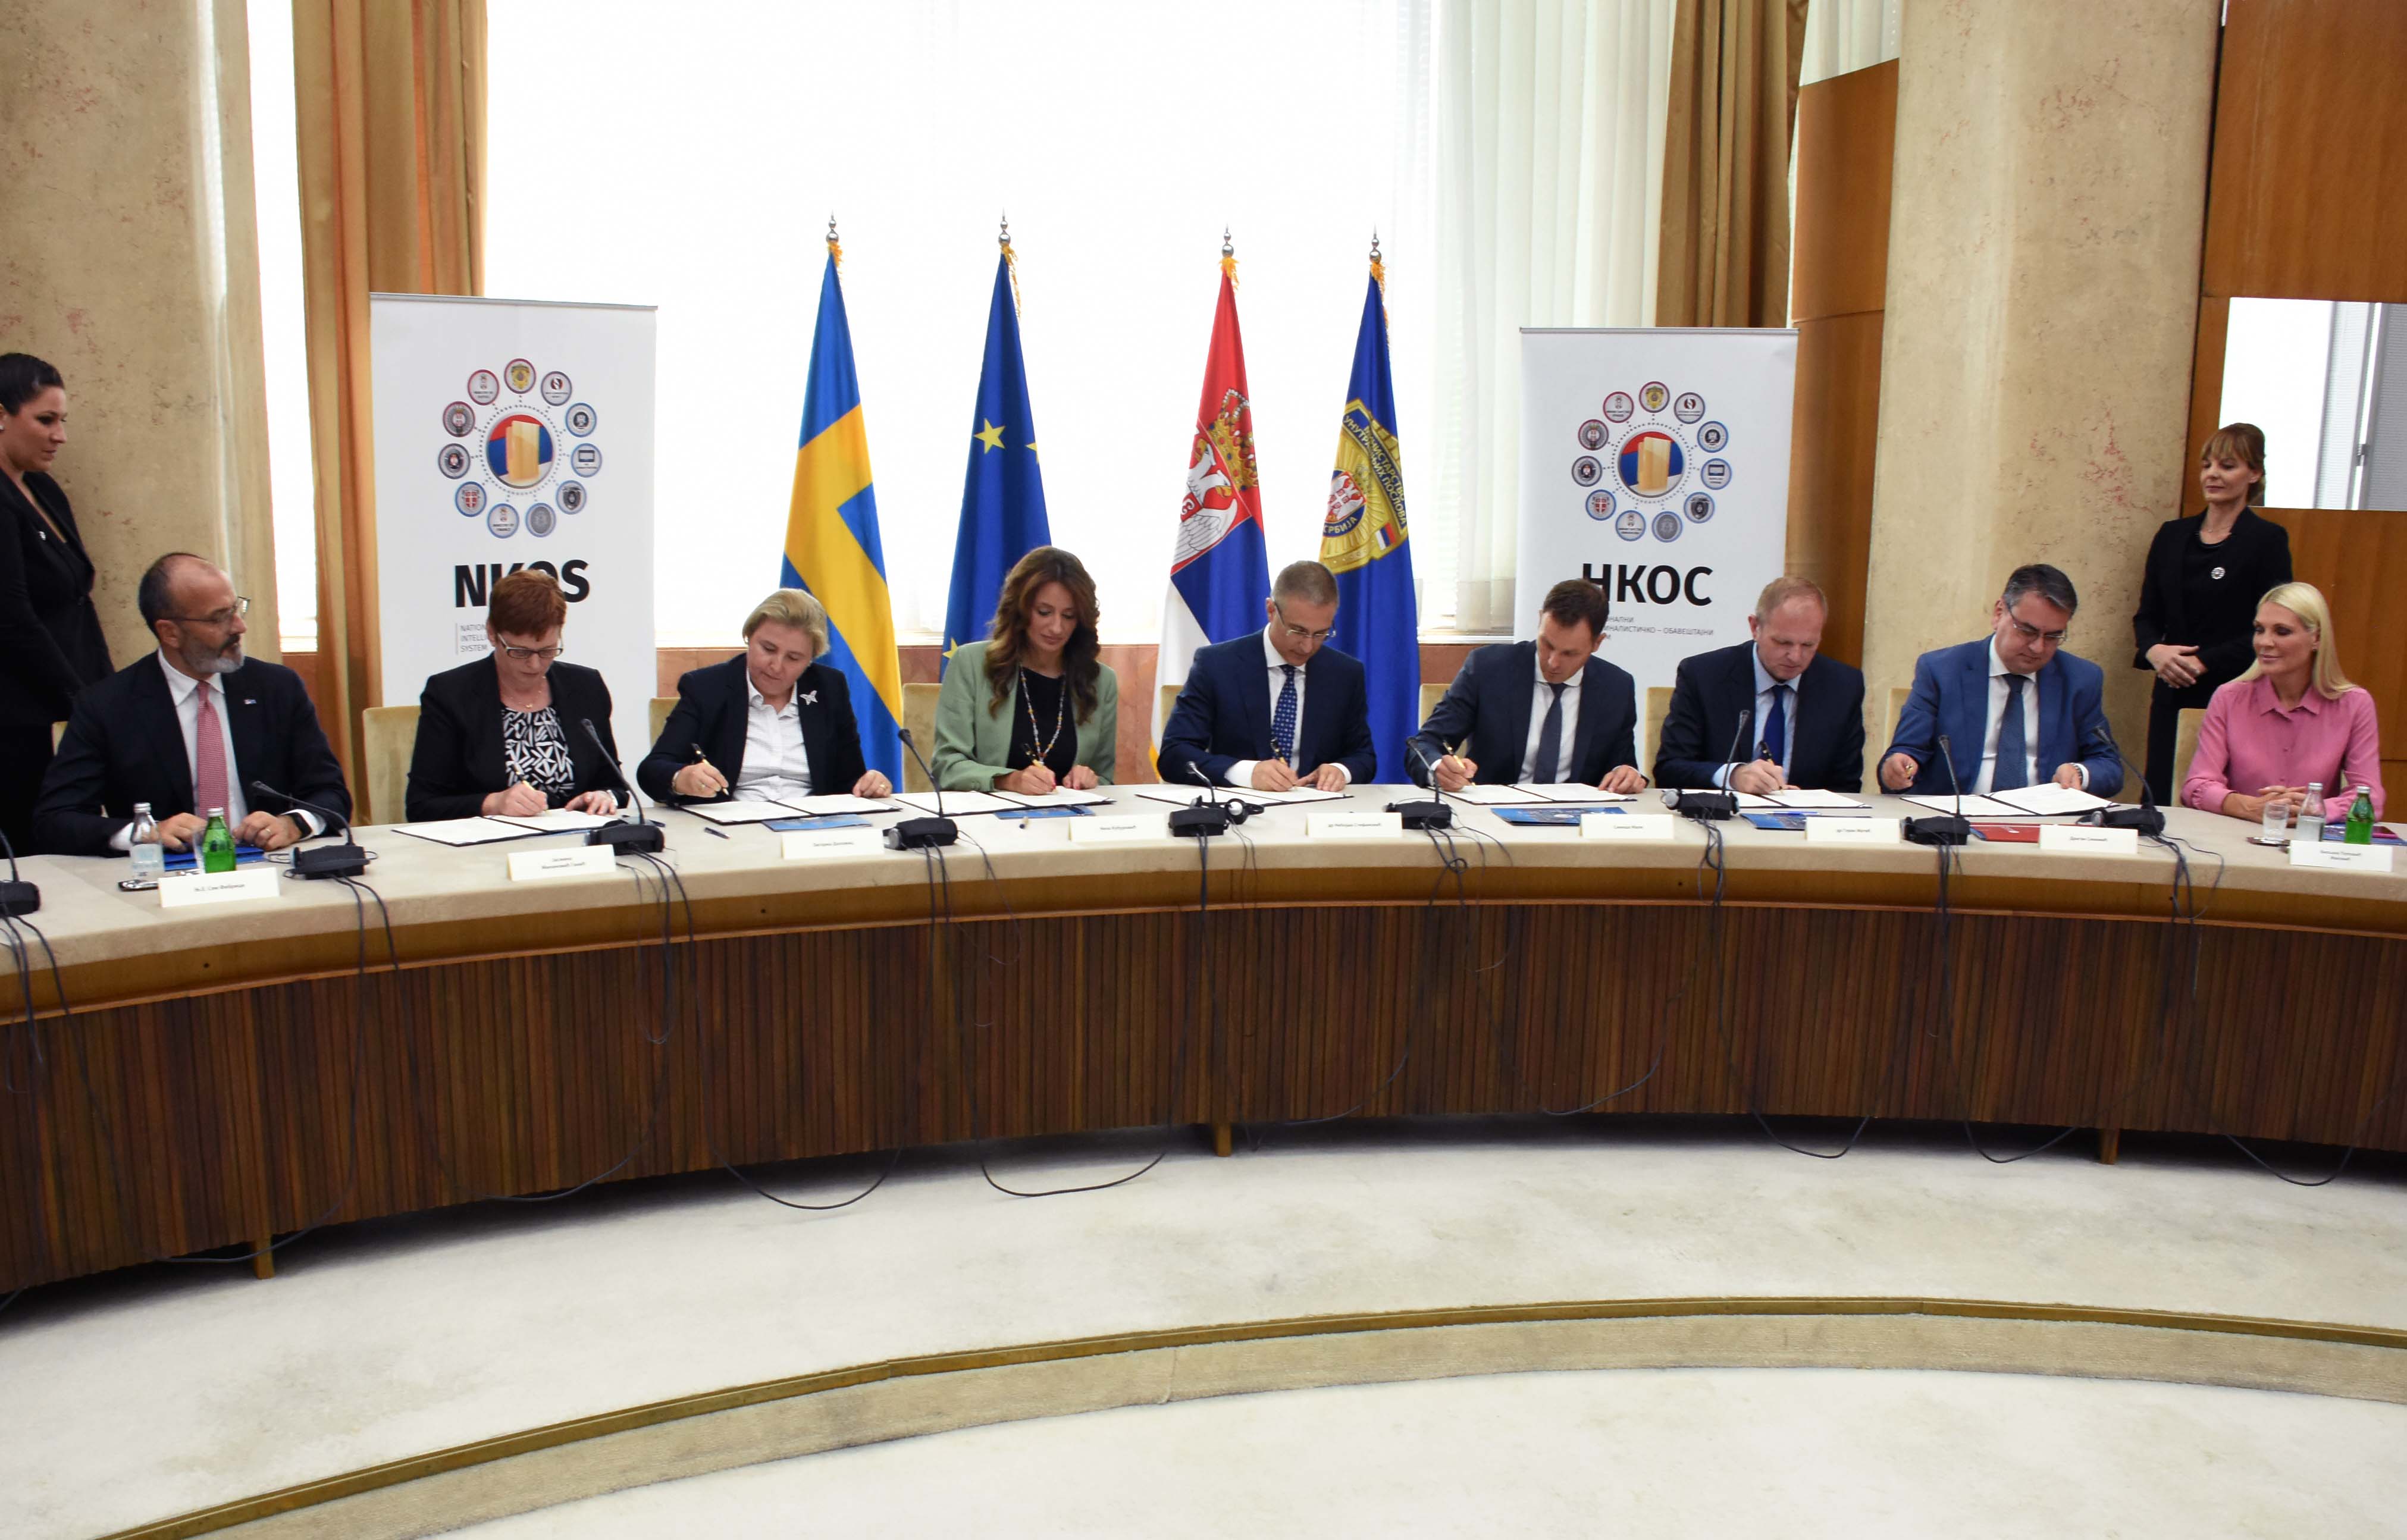 Potpisan Sporazum o saradnji na uspostavlјanju i razvoju Nacionalnog kriminalističko-obaveštajnog sistema